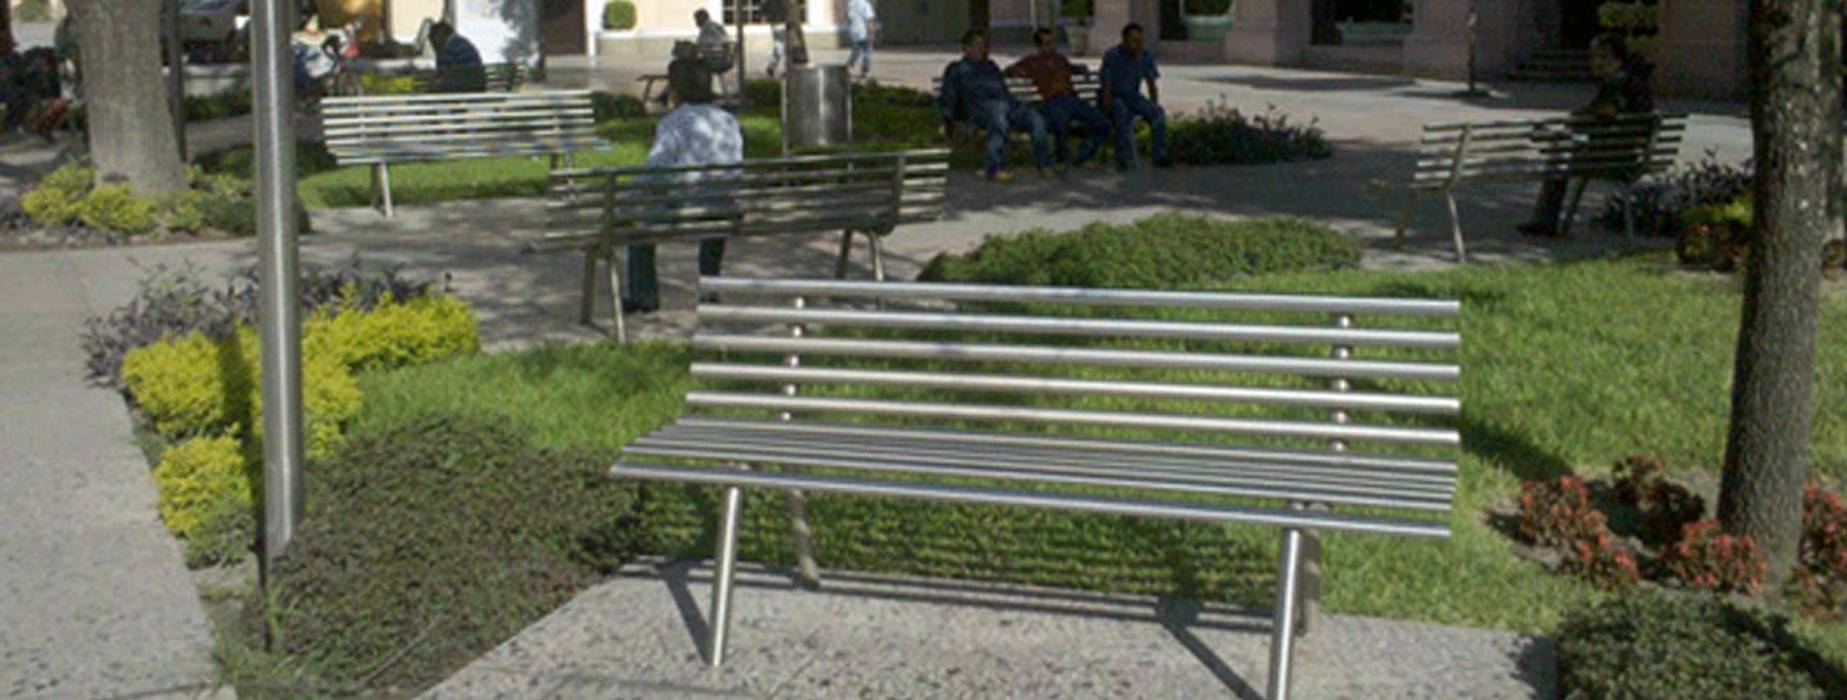 Remodelación de la Plaza Hidalgo, Nacional de Bancas Nacional de Bancas Jardines modernos